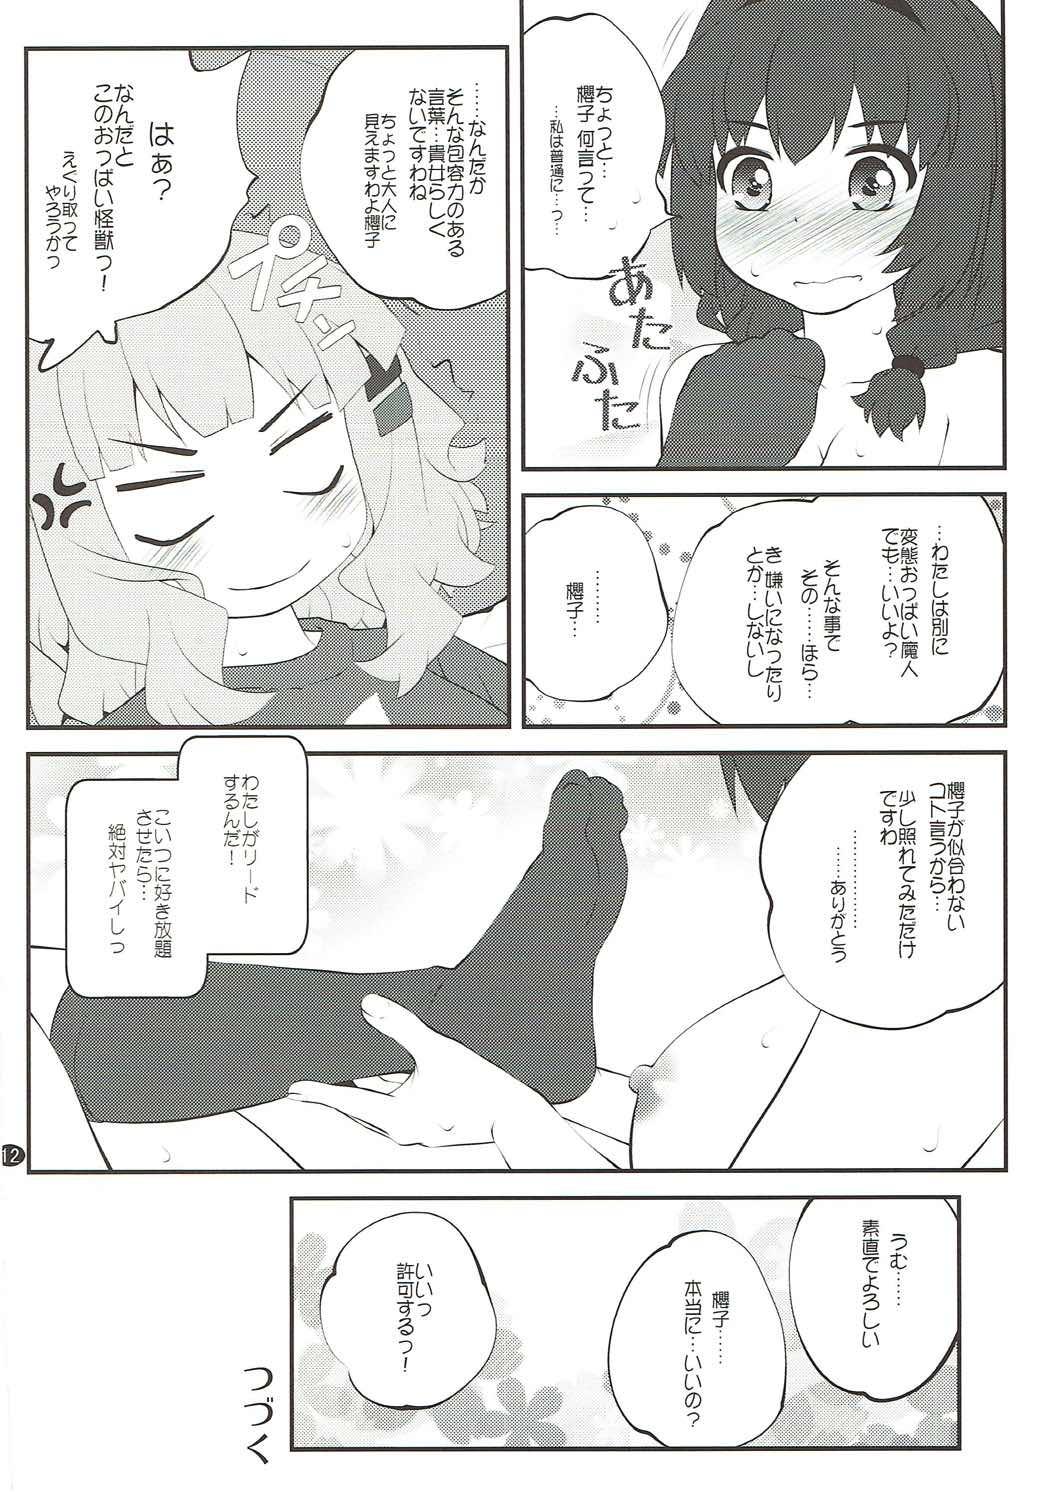 Gaybukkake Himegoto Flowers 12 - Yuruyuri People Having Sex - Page 11